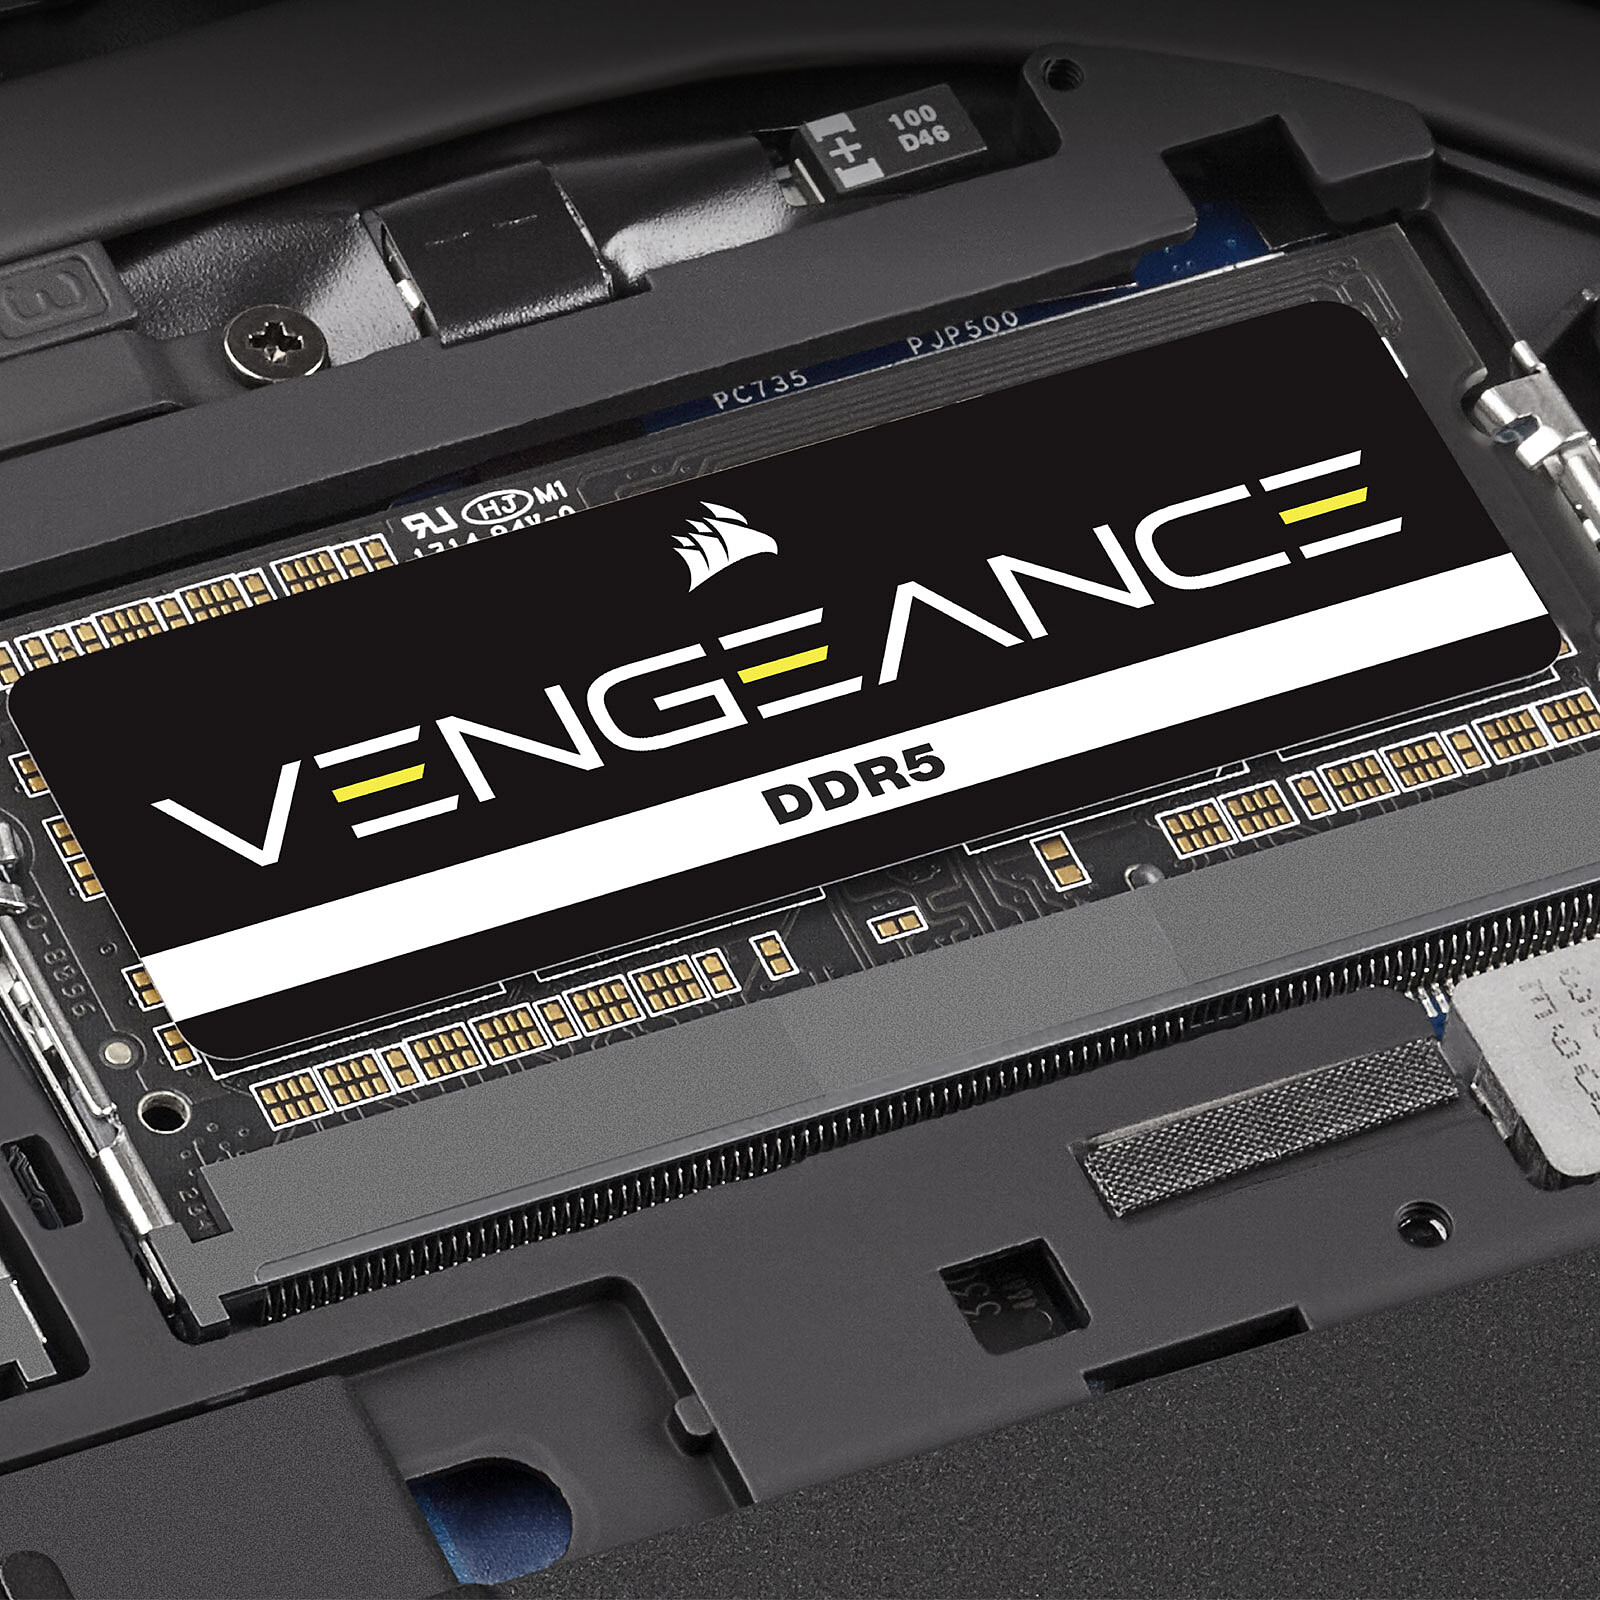 RAM Corsair Vengeance SO-DIMM DDR5